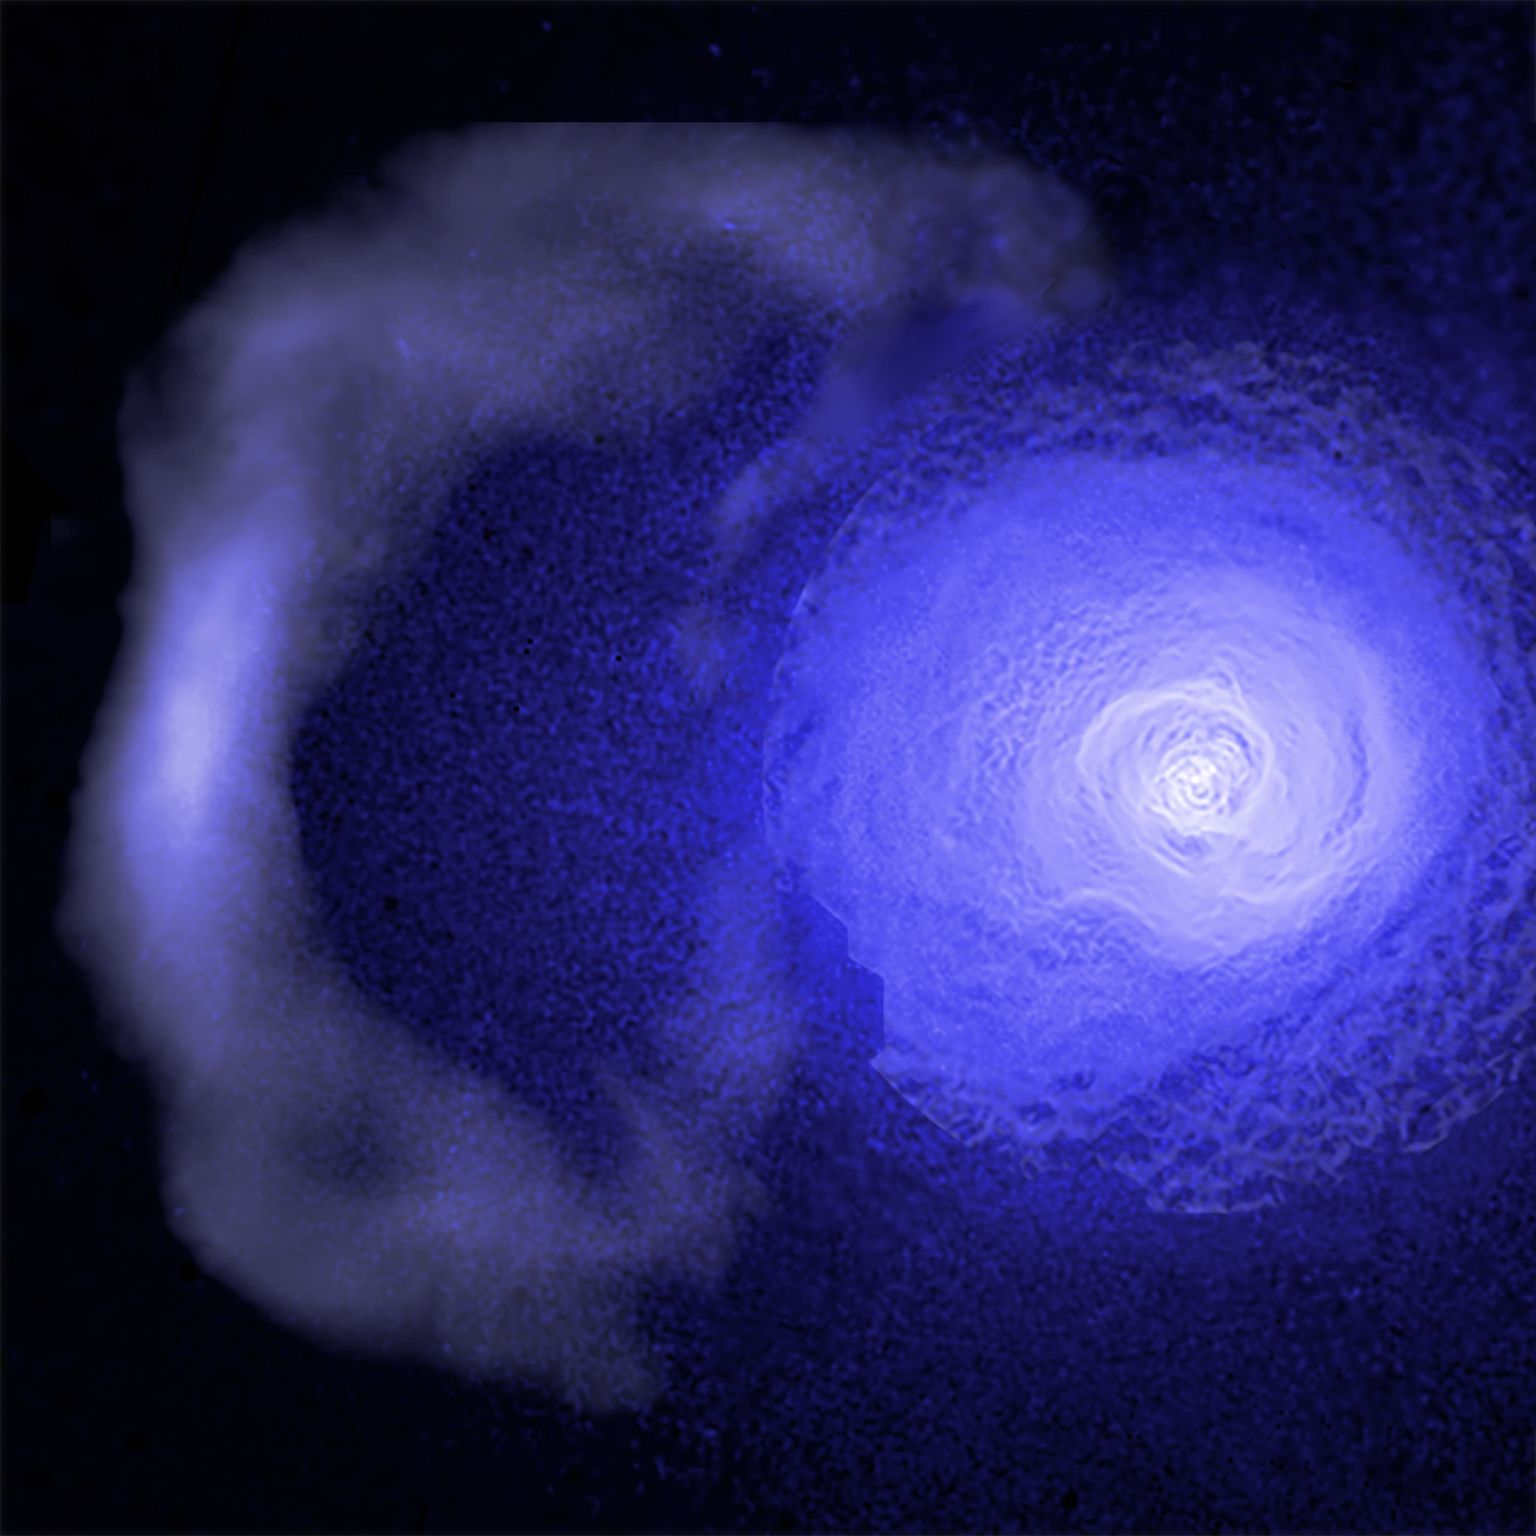 Perseuse galaktikaparve läbivat külma tiheda gaasi front jääb pildil vasakule servale